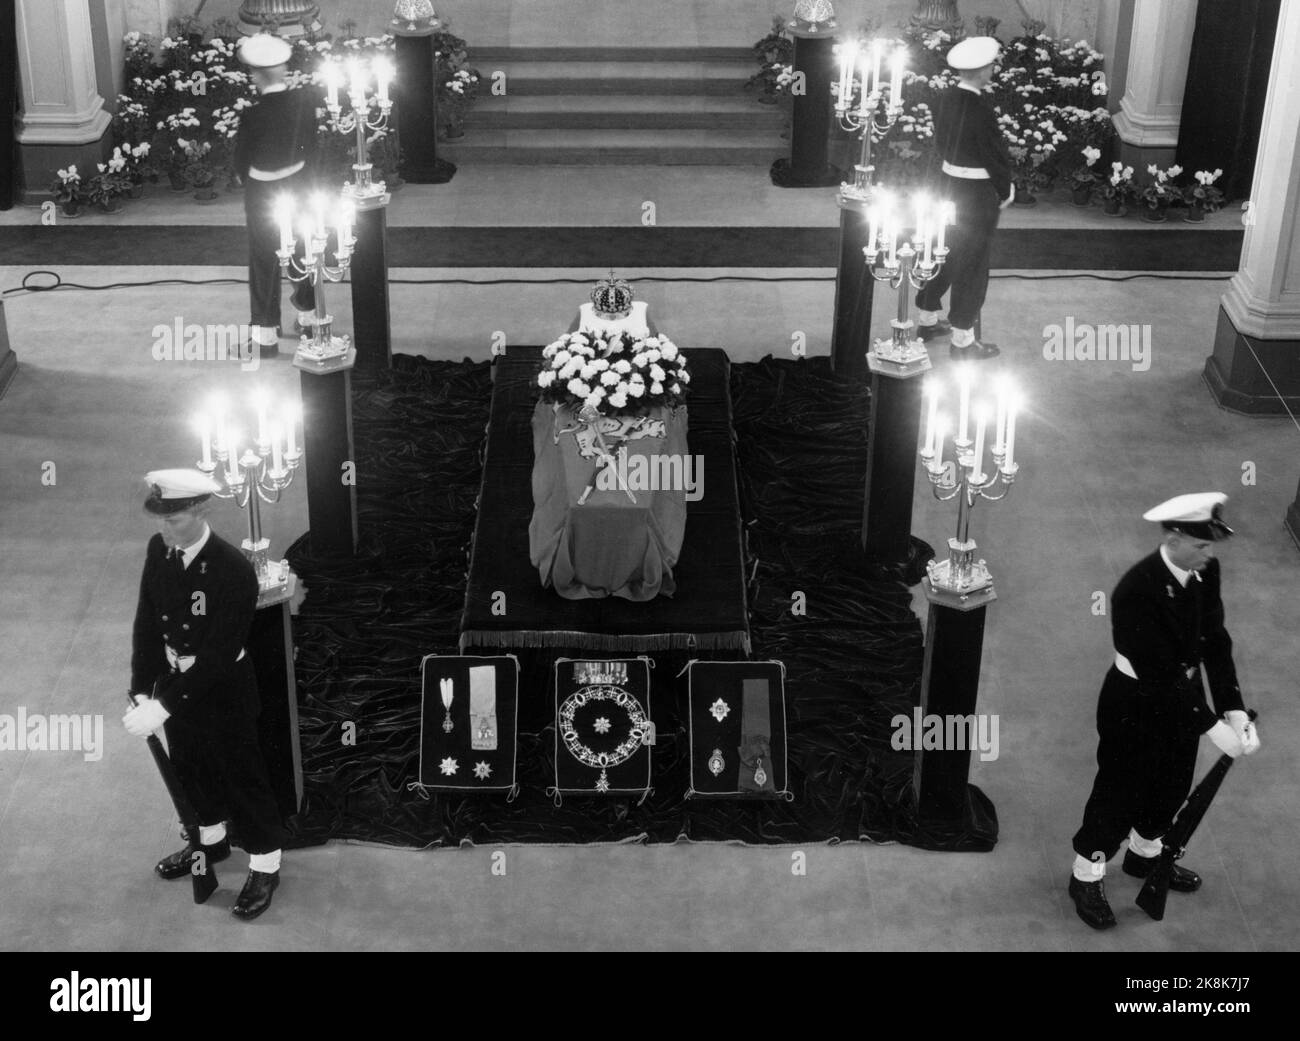 Oslo 19570926: Re Haakon morì 21 Seppermber. La bara di re Haakon fu posta nella cappella del castello in modo che la gente potesse defilare oltre. Foto: NTB / NTB Foto Stock